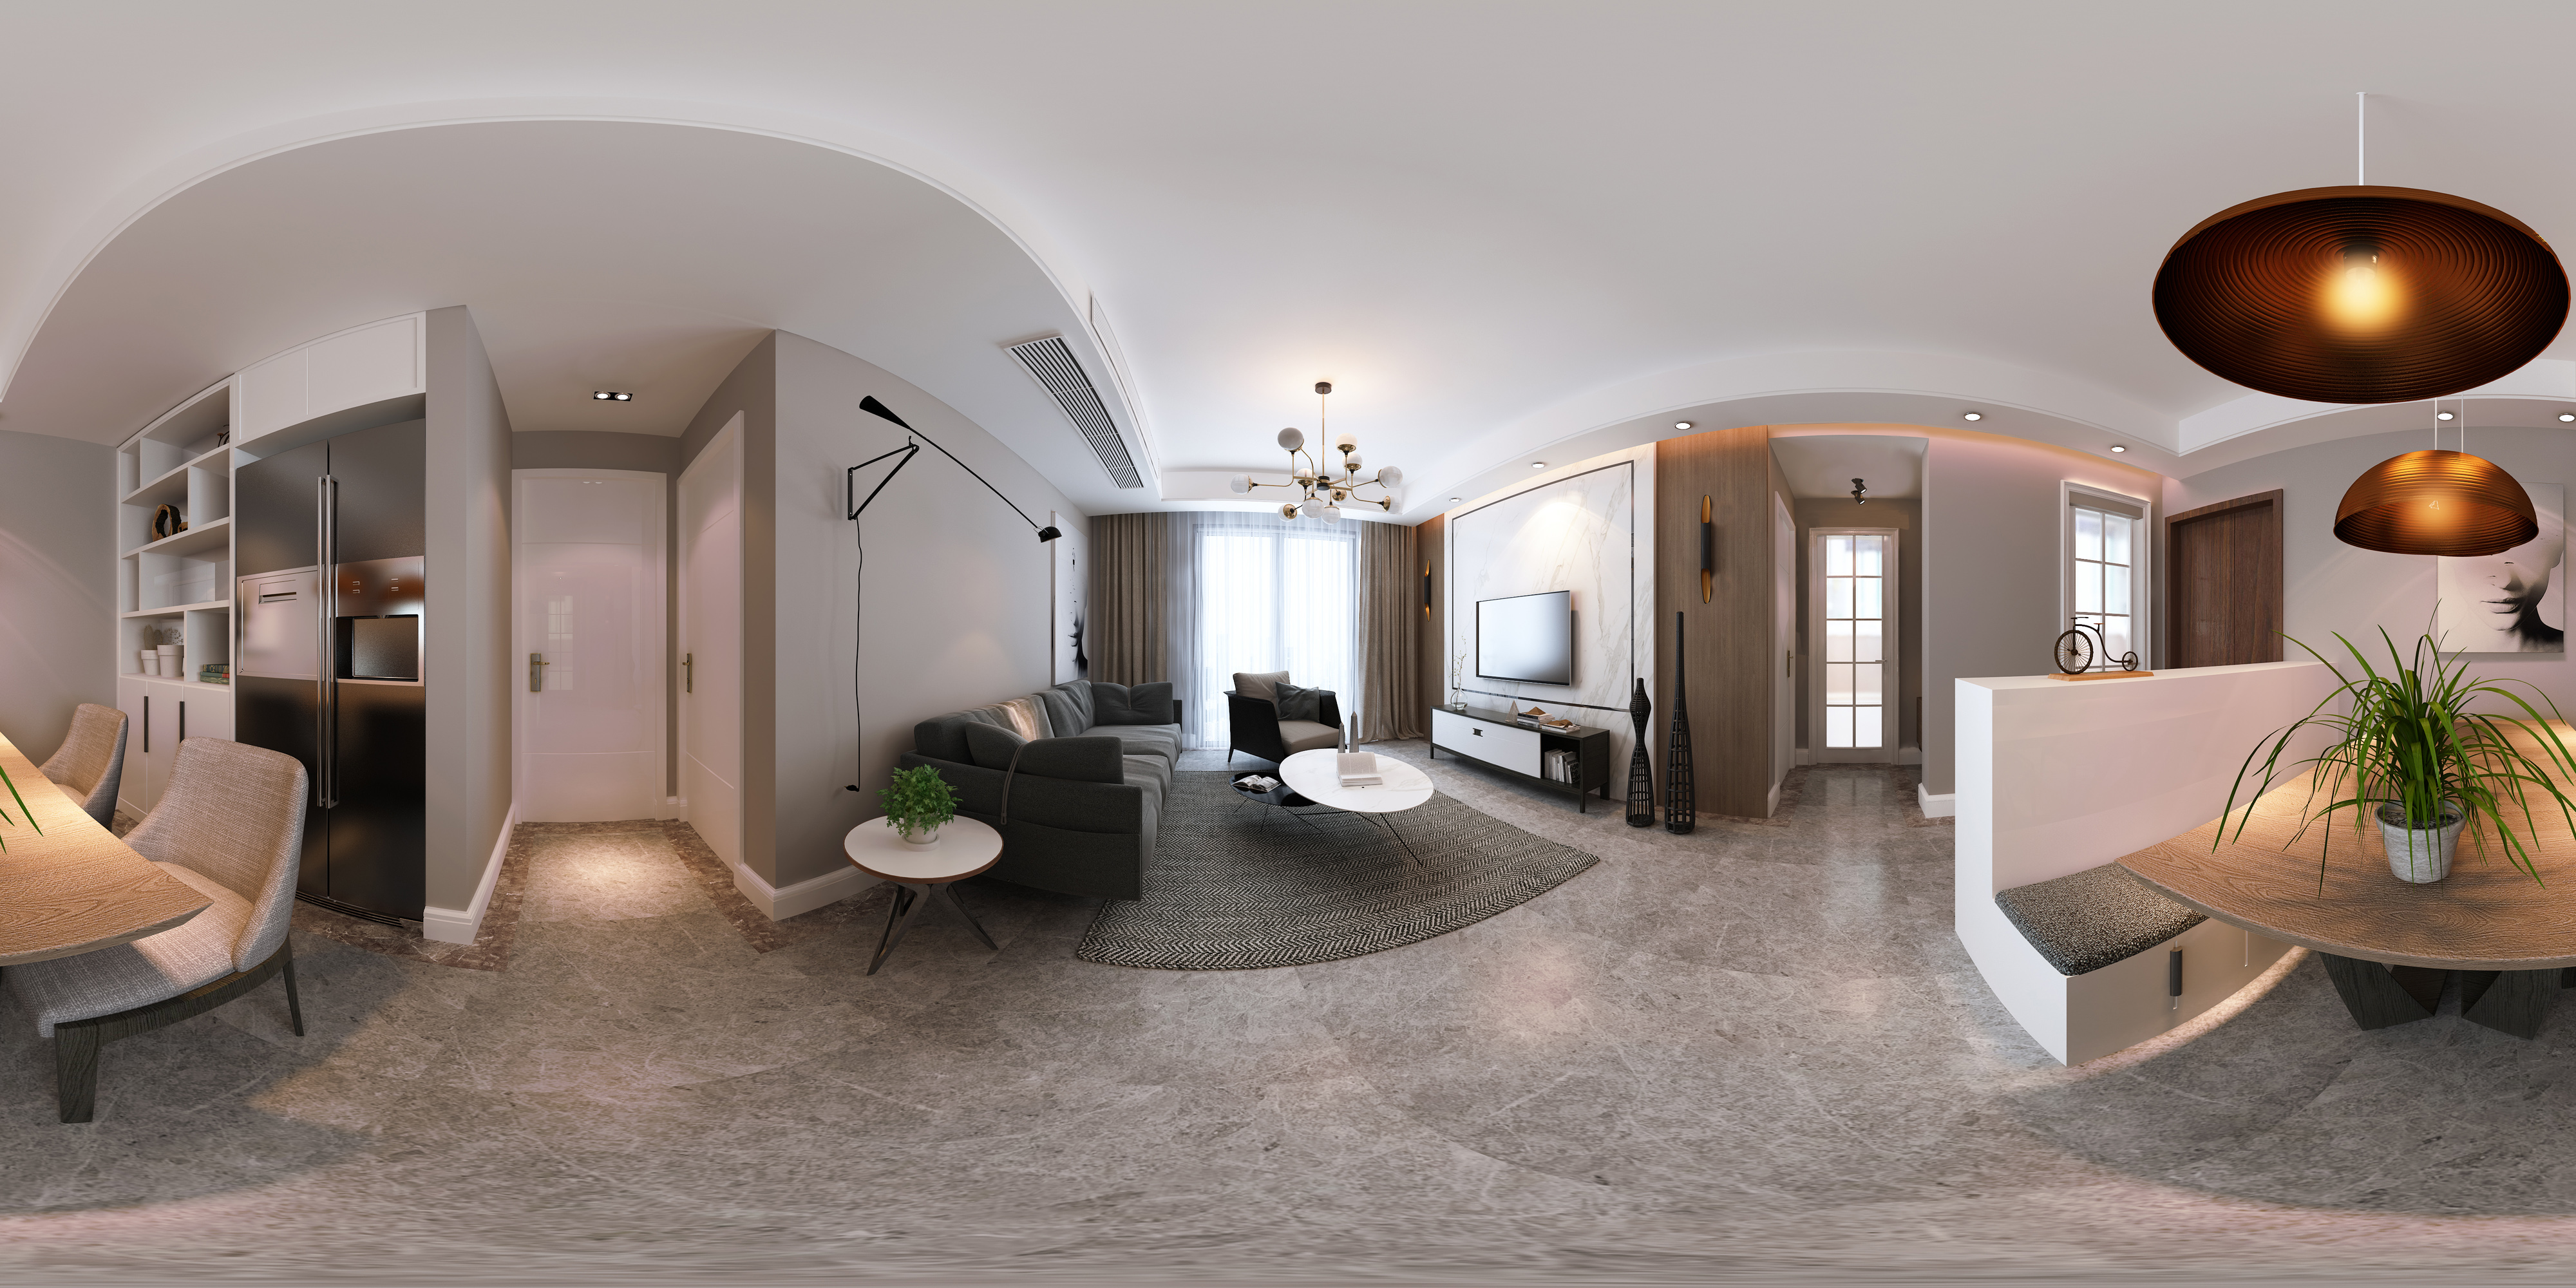 室内模型, 现代简约, 精品模型, 客厅, 沙发茶几组合, 沙发组合